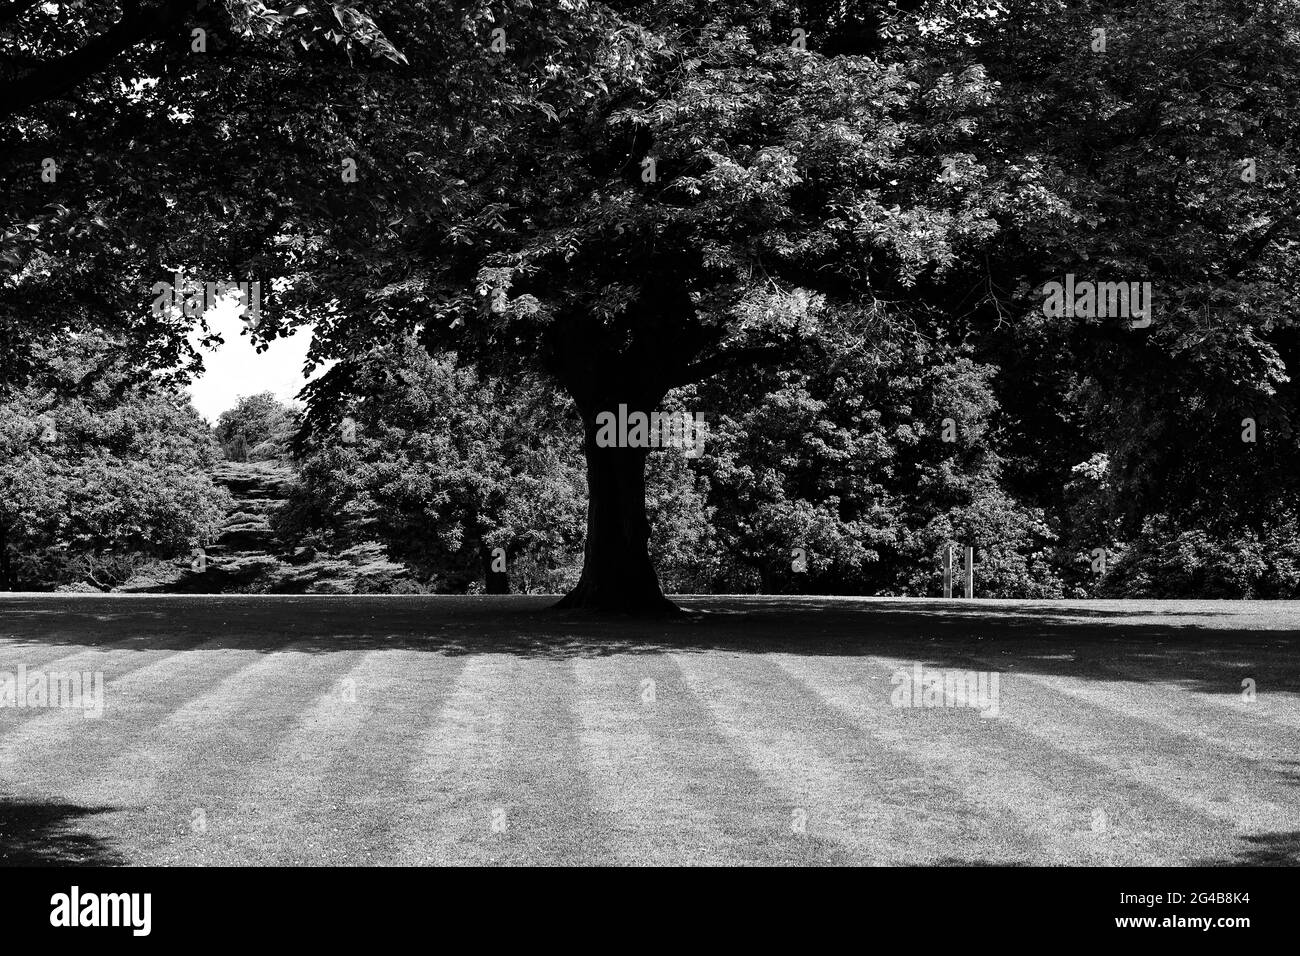 Photographies en noir et blanc d'une demeure ancestrale du Cheshire, Angleterre, Royaume-Uni Banque D'Images